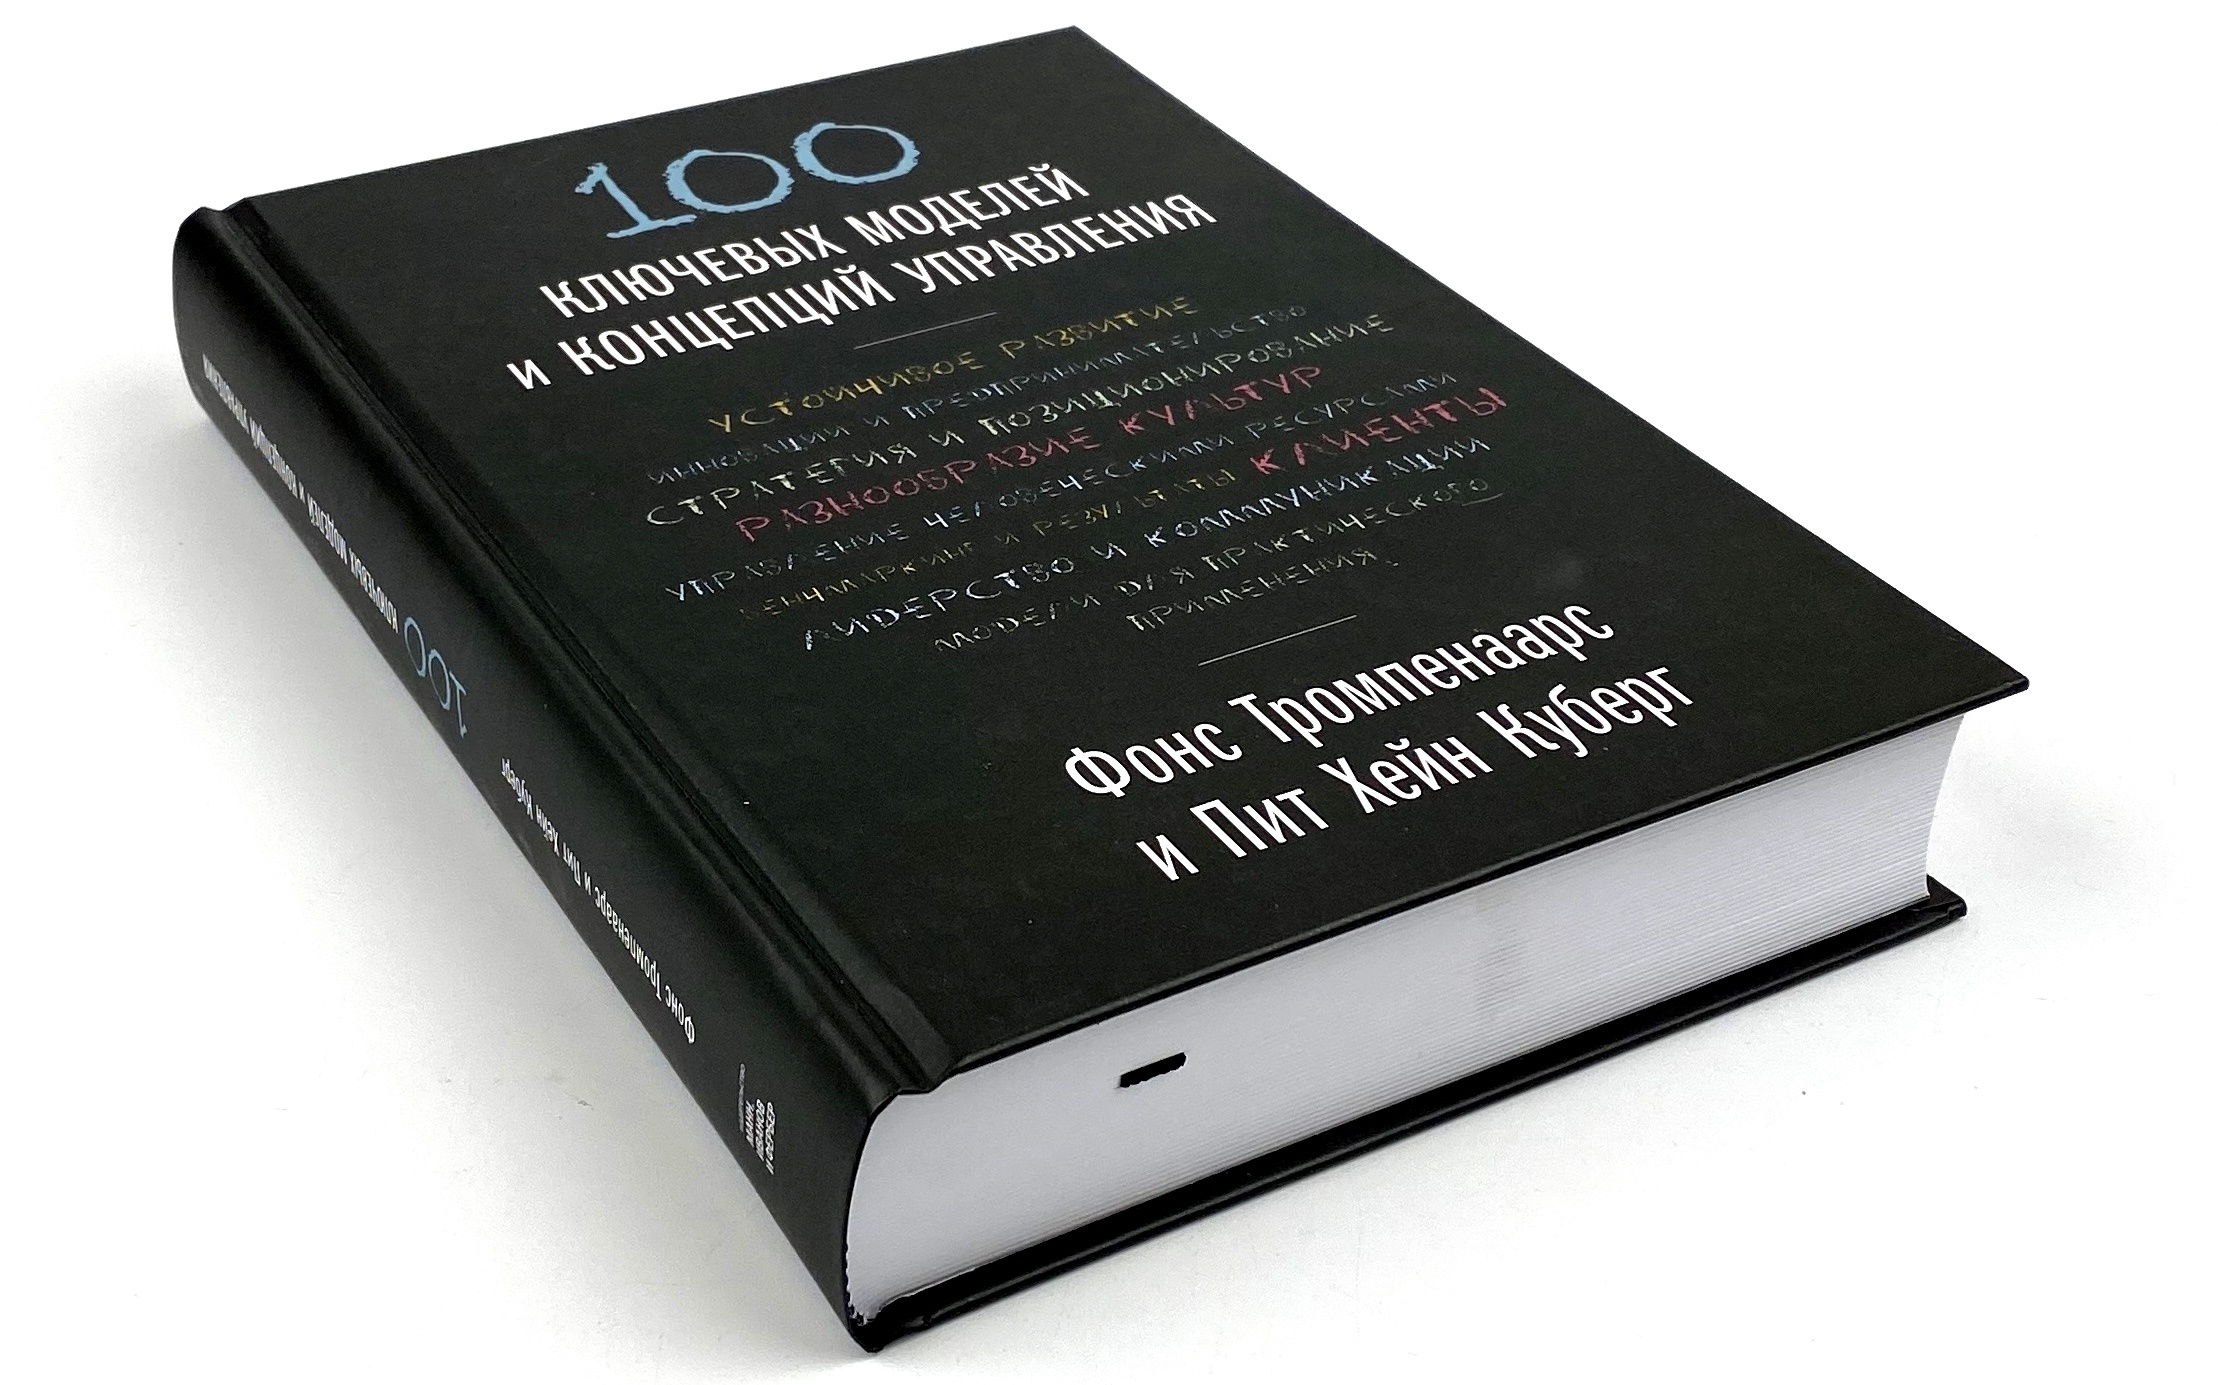 100 ключевых моделей и концепций управления . Автор — Фонс Тромпенаарс, Пит Хэйн Кеберг. 